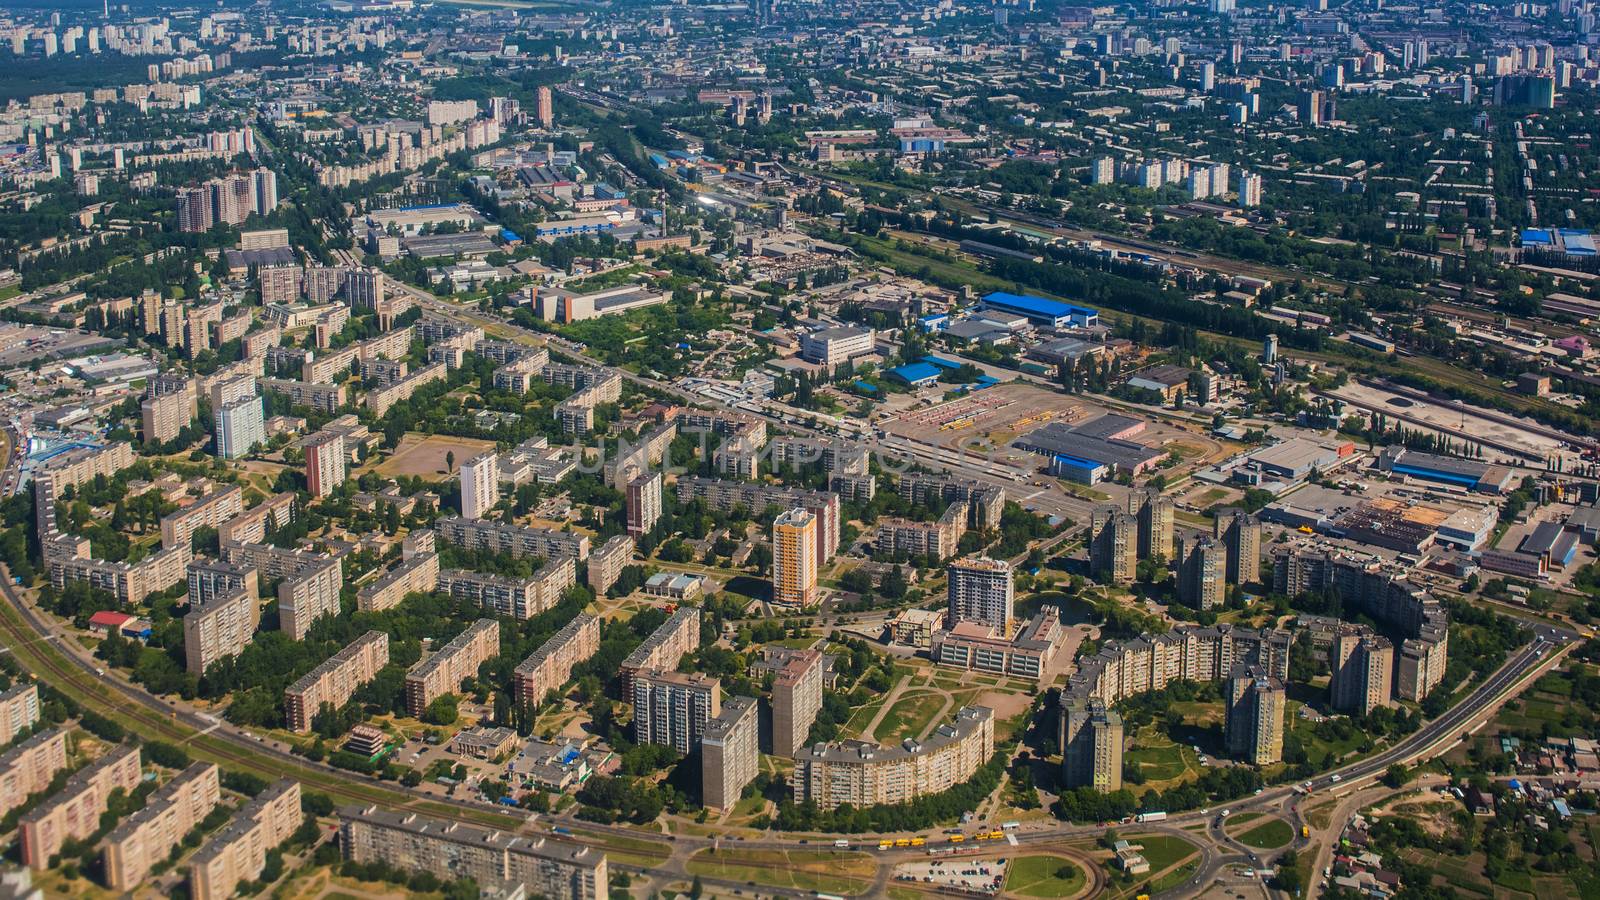 Aerial view of a city by sarymsakov